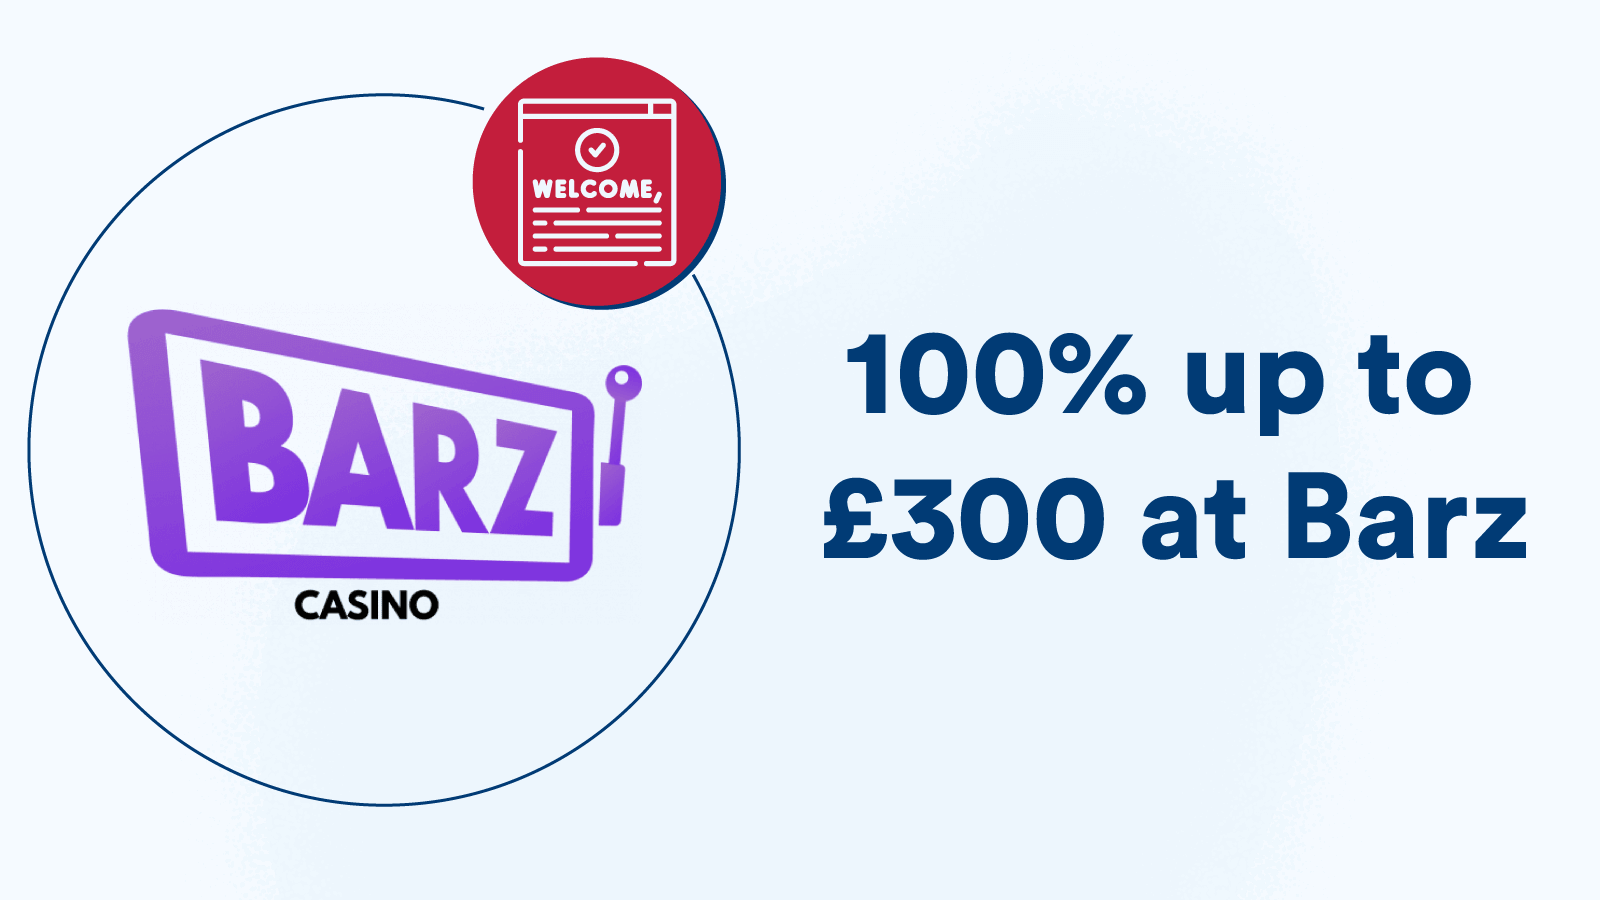 100% up to £300 at Barz